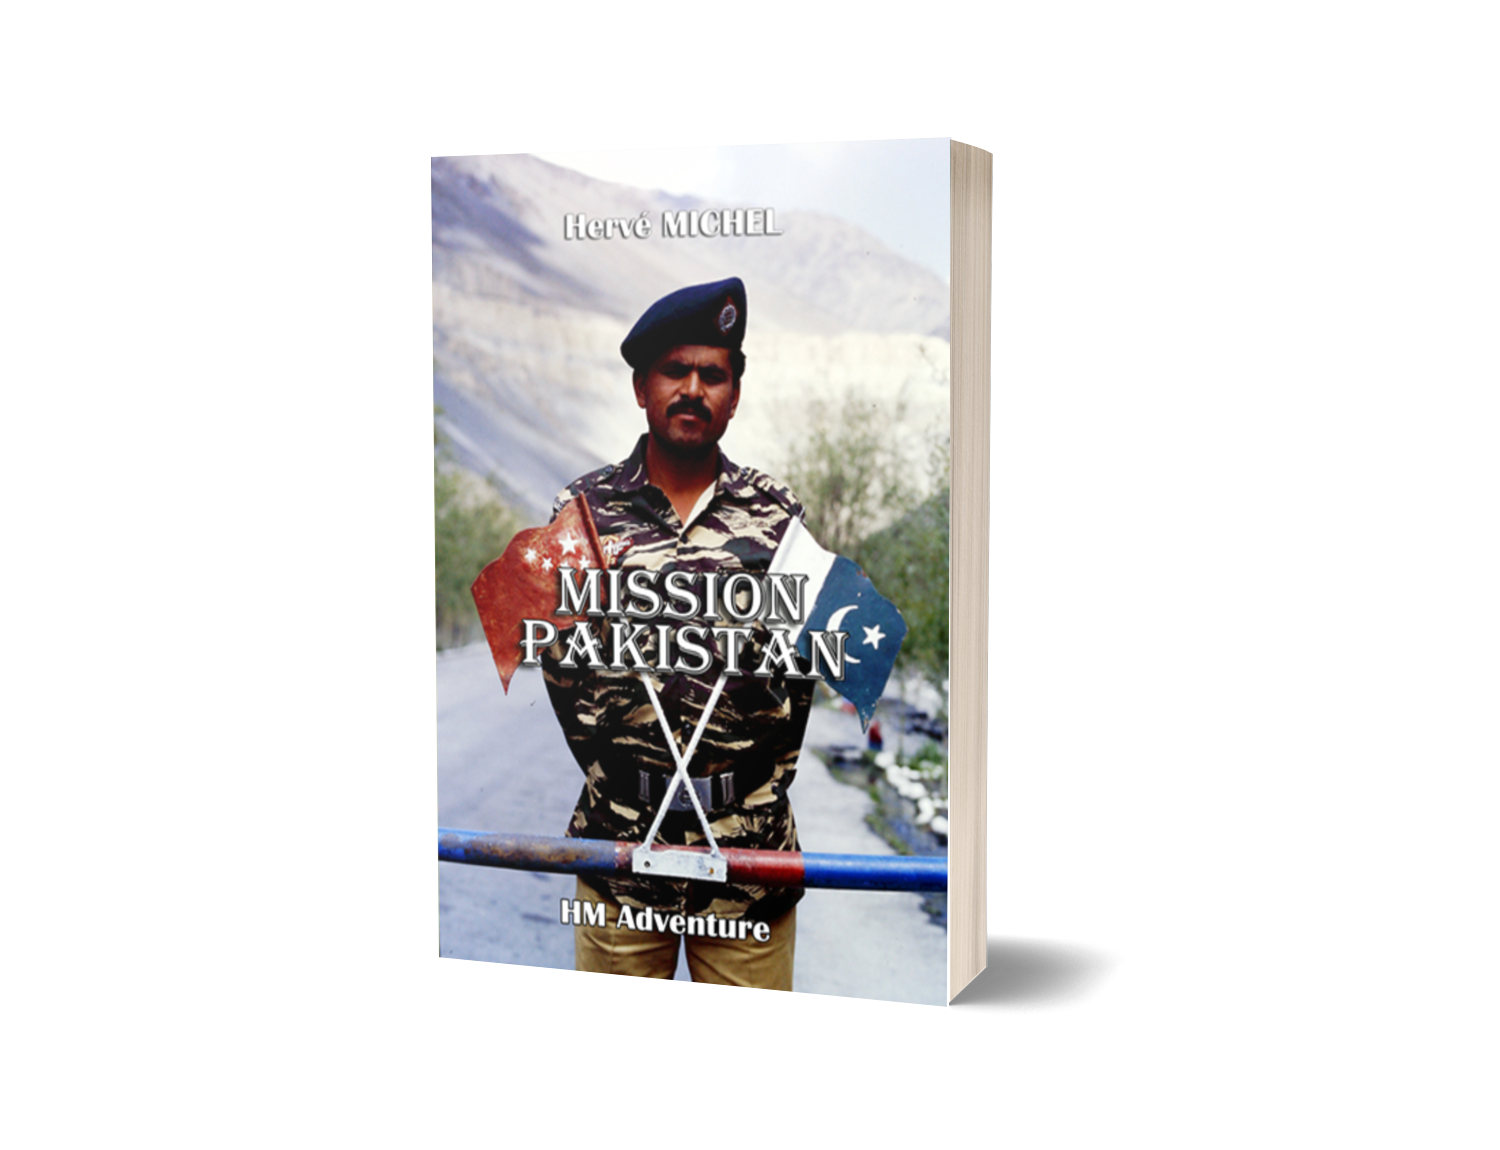 Mission Pakistan, un récit de voyage et d'aventure de Hervé Michel